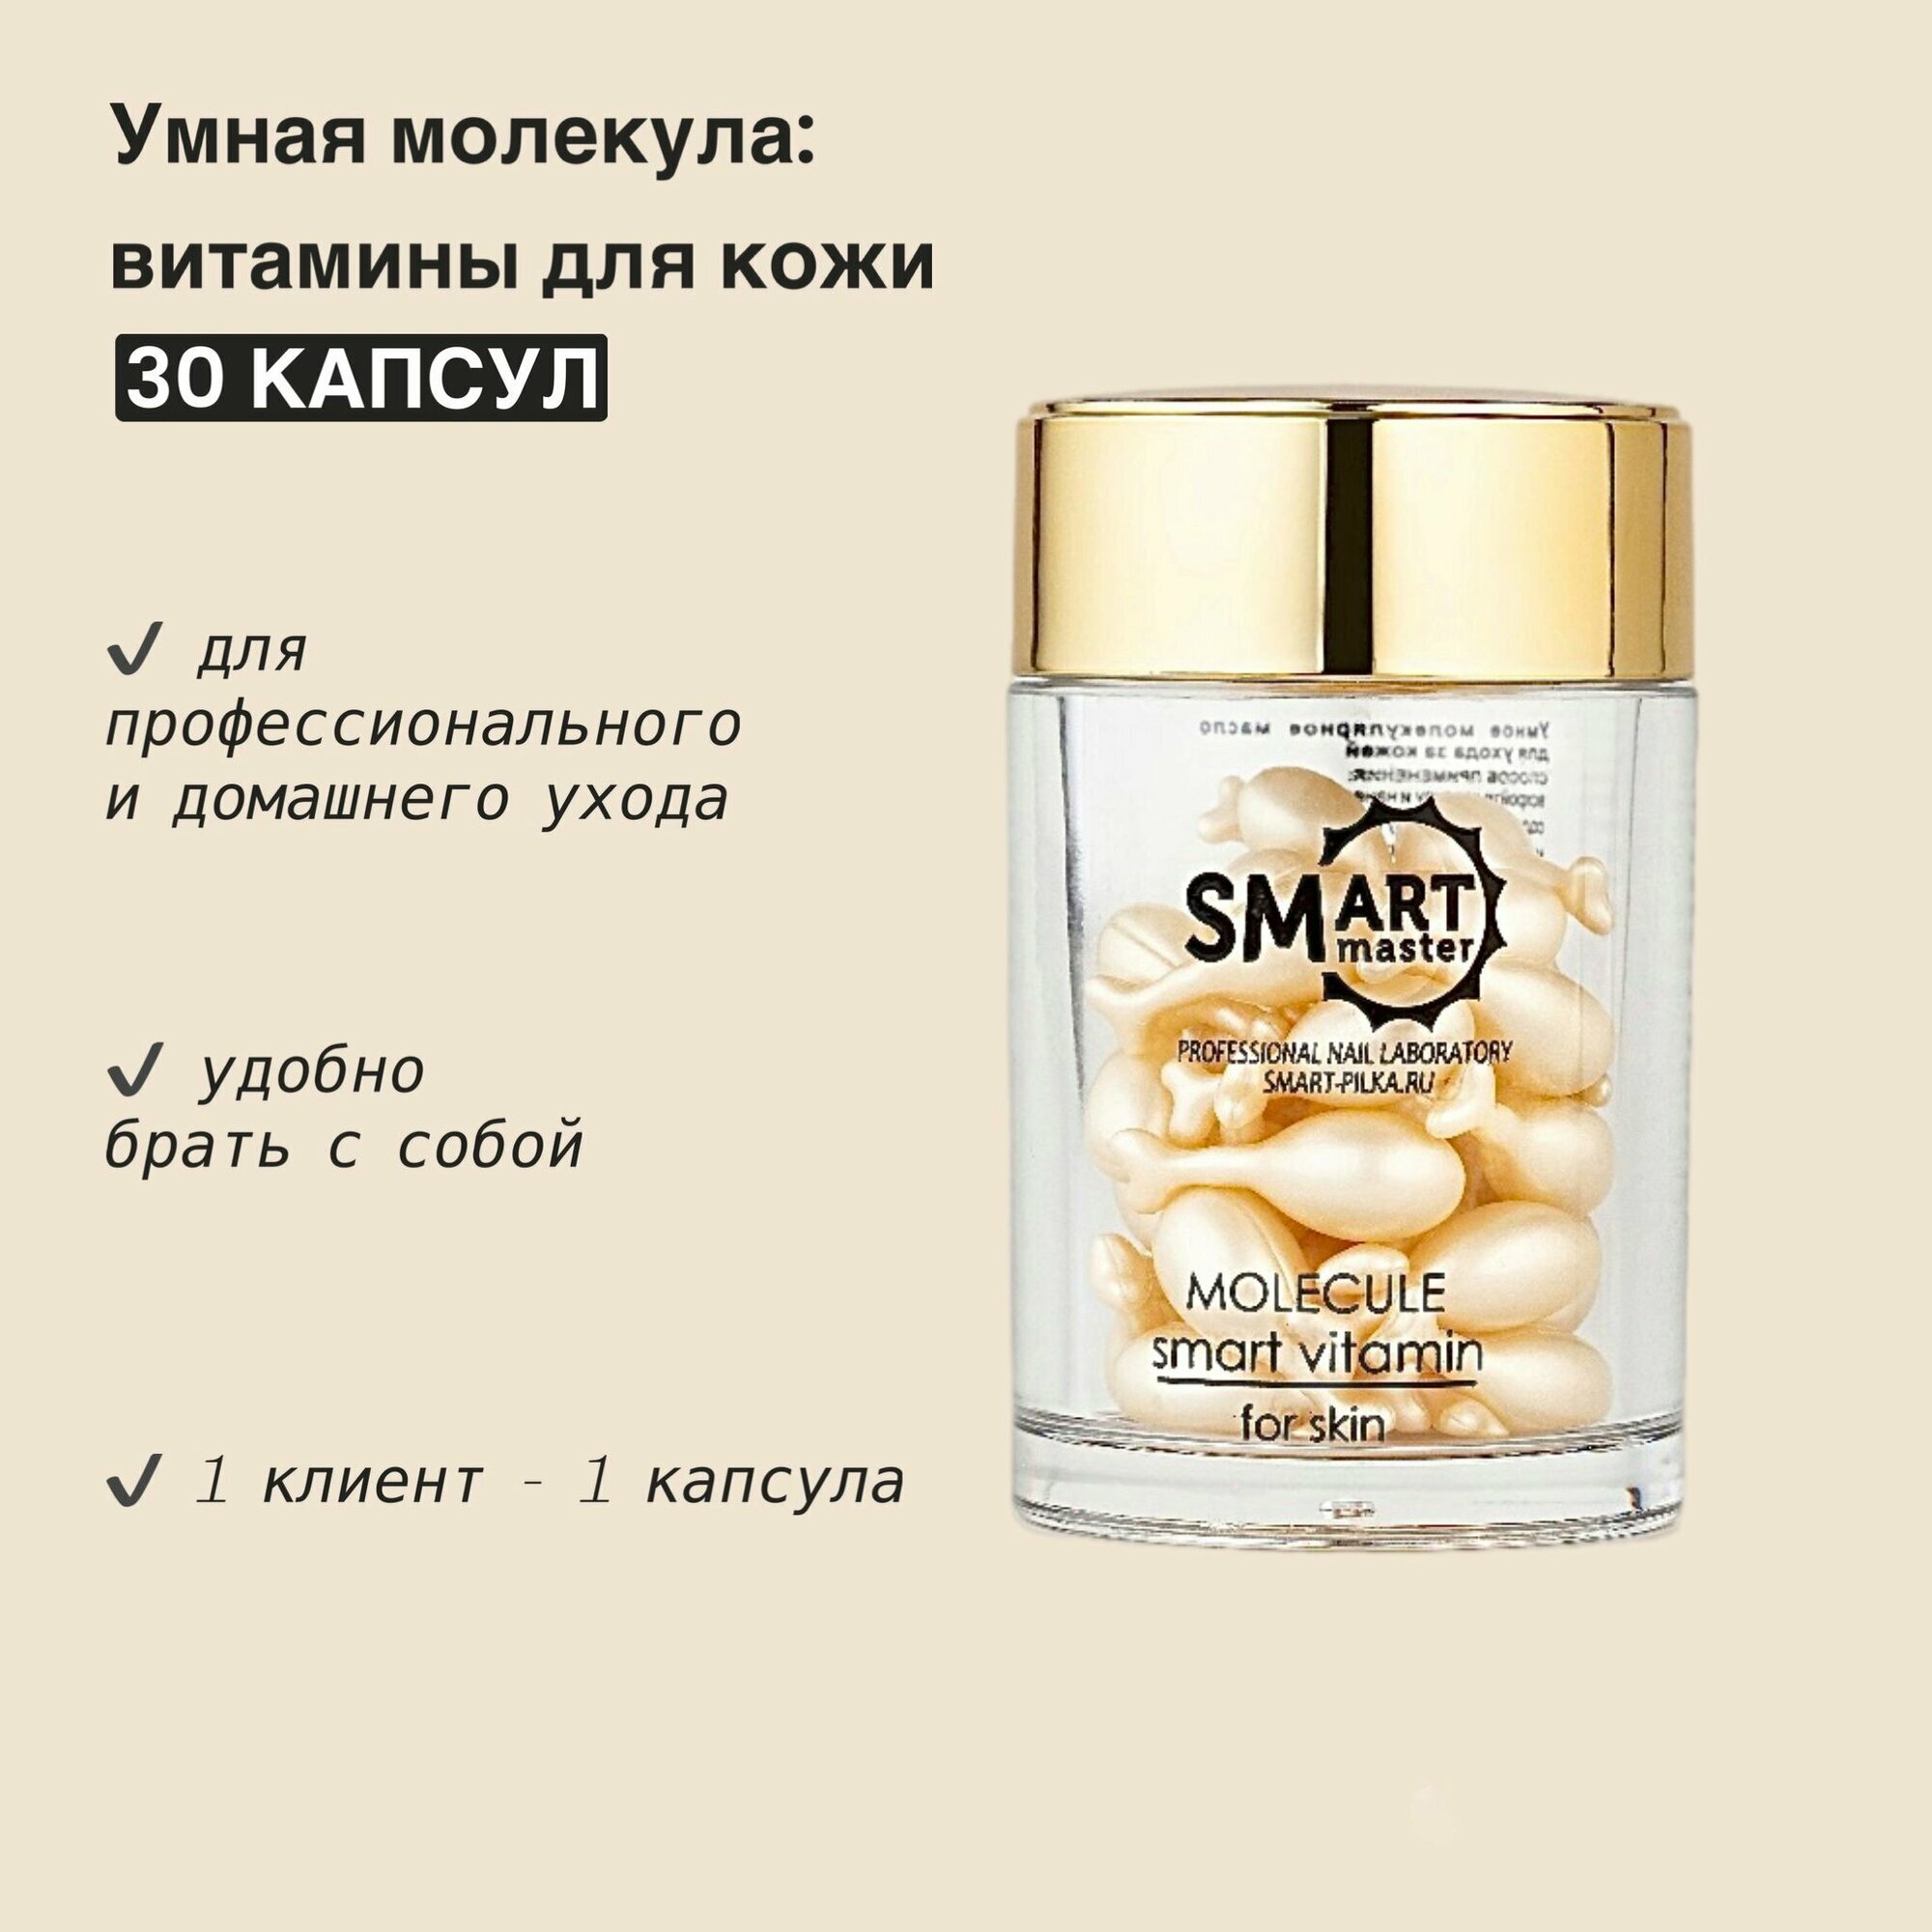 Витамины для кожи - умная молекула SMART 30 ШТ